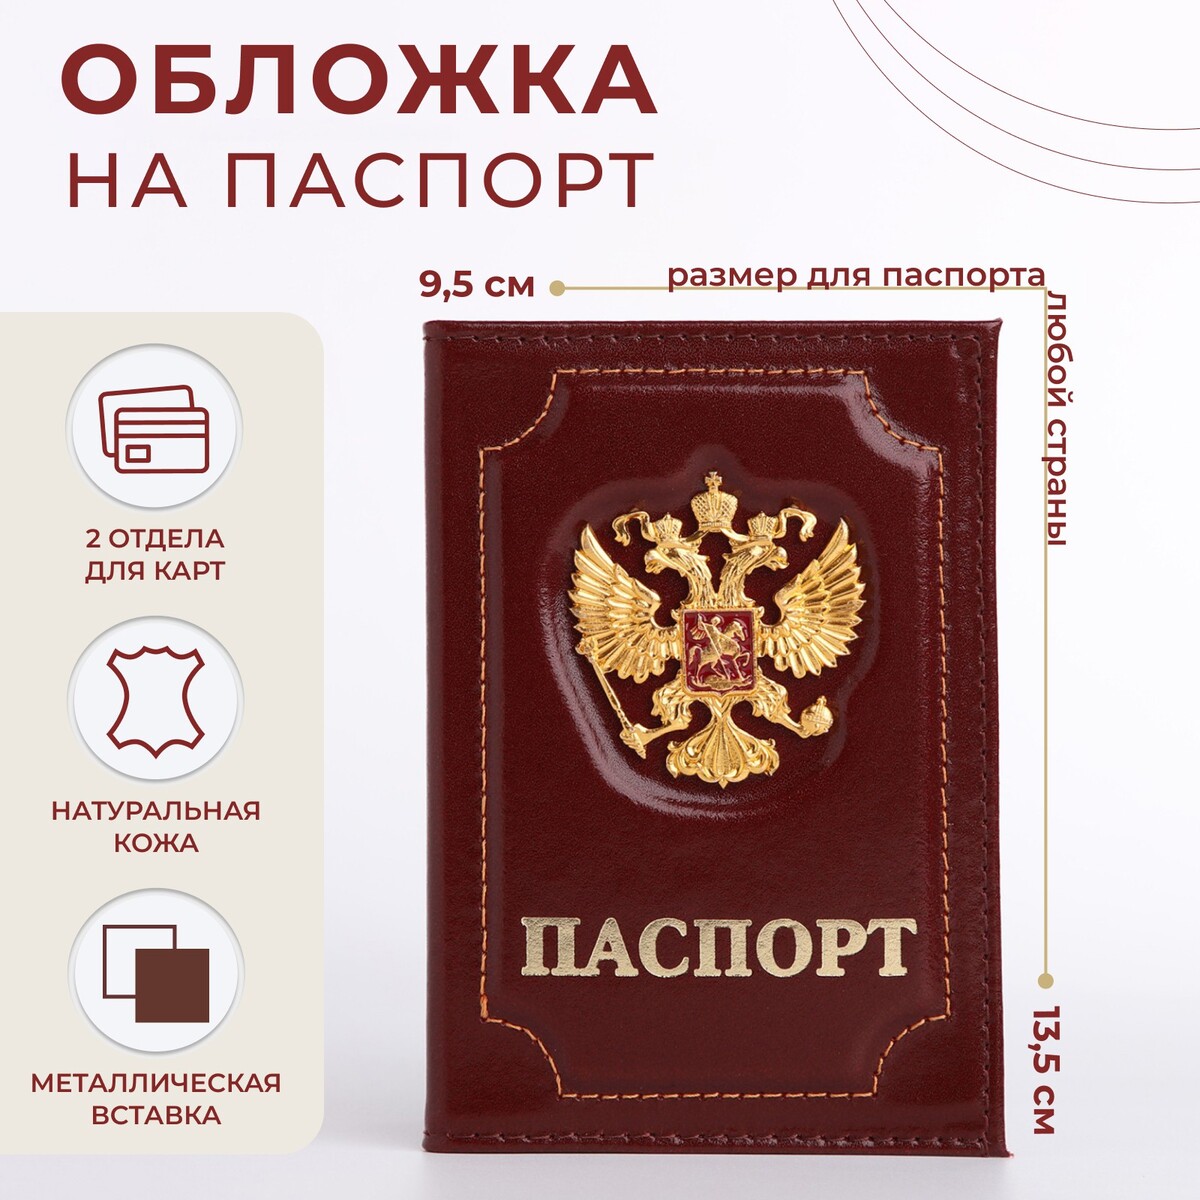 Обложка для паспорта, цвет бордовый обложка для паспорта